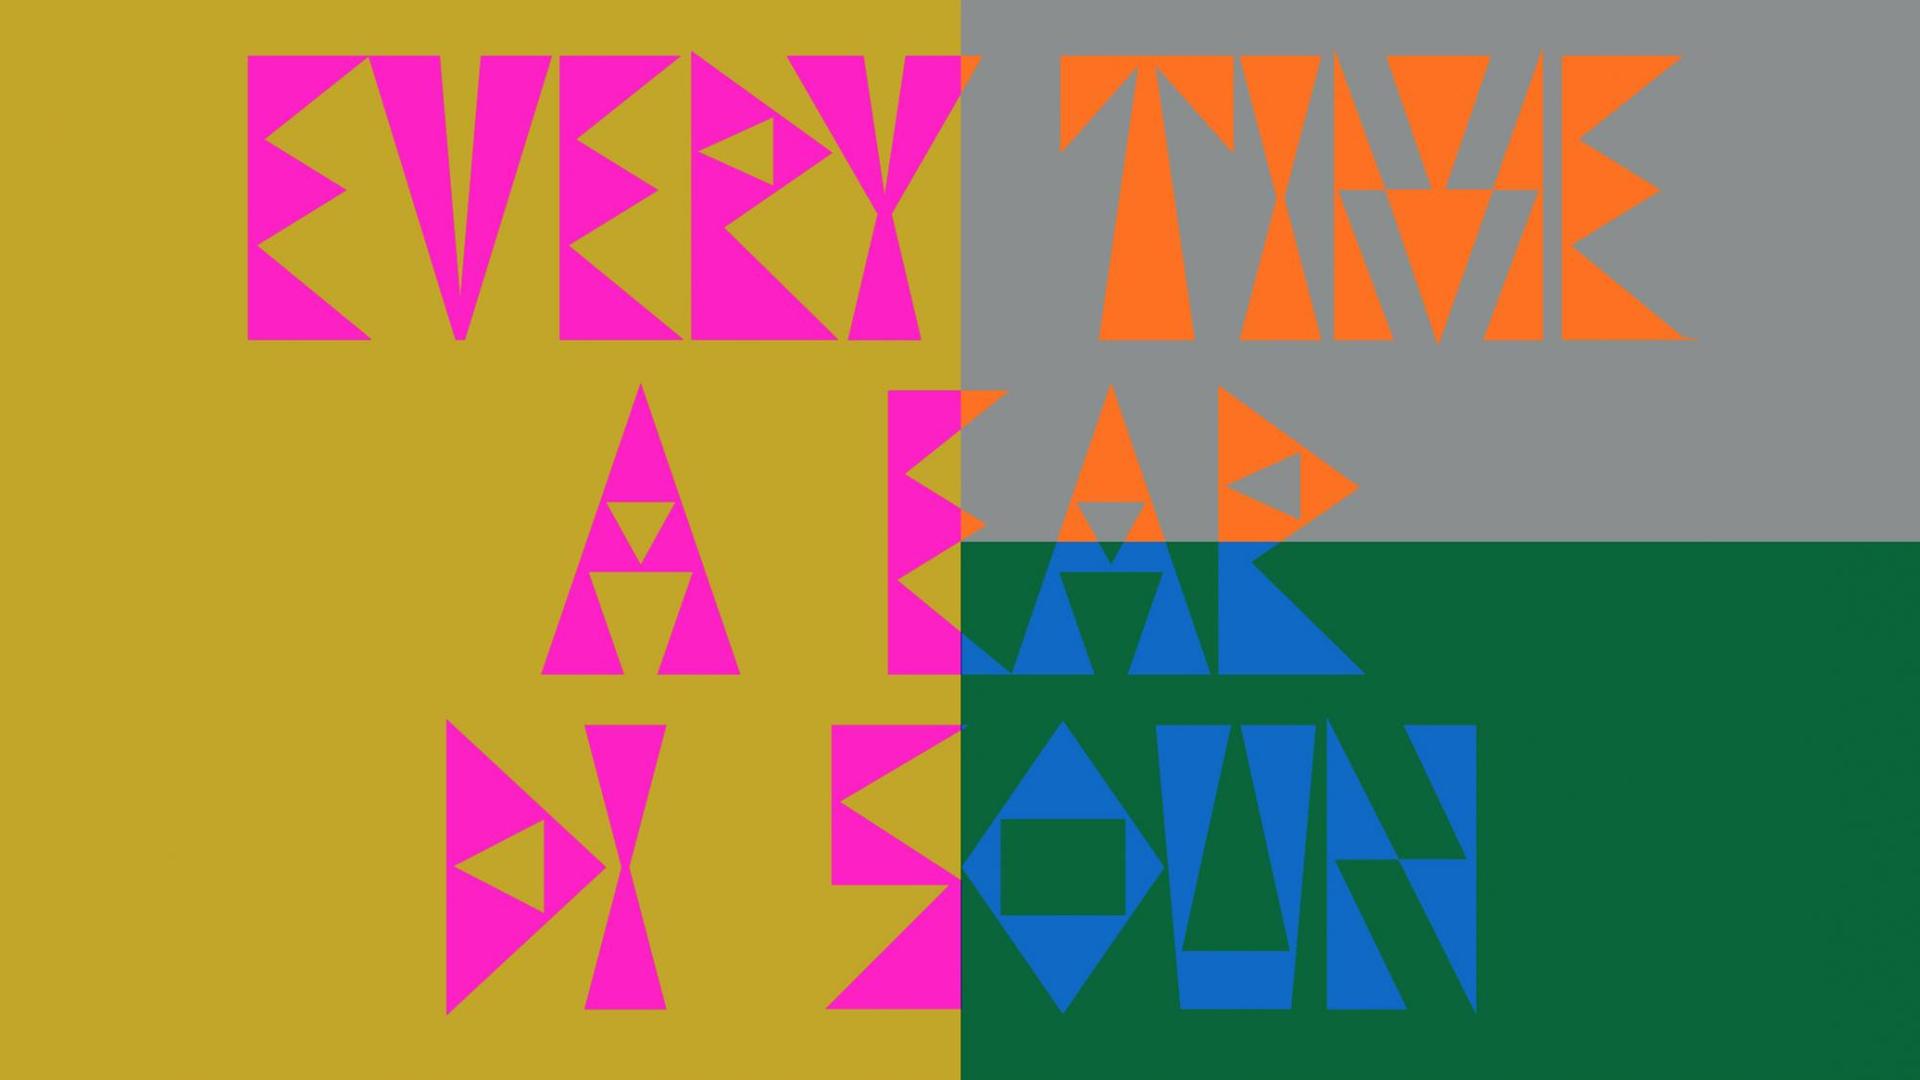 Bunte große Blockbuchstaben auf farbenfrohem Hintergrund: "Every Time A Ear di Soun" - Die Klänge dieser Radiokunstreihe werden von acht Sendern weltweit ausgestrahlt